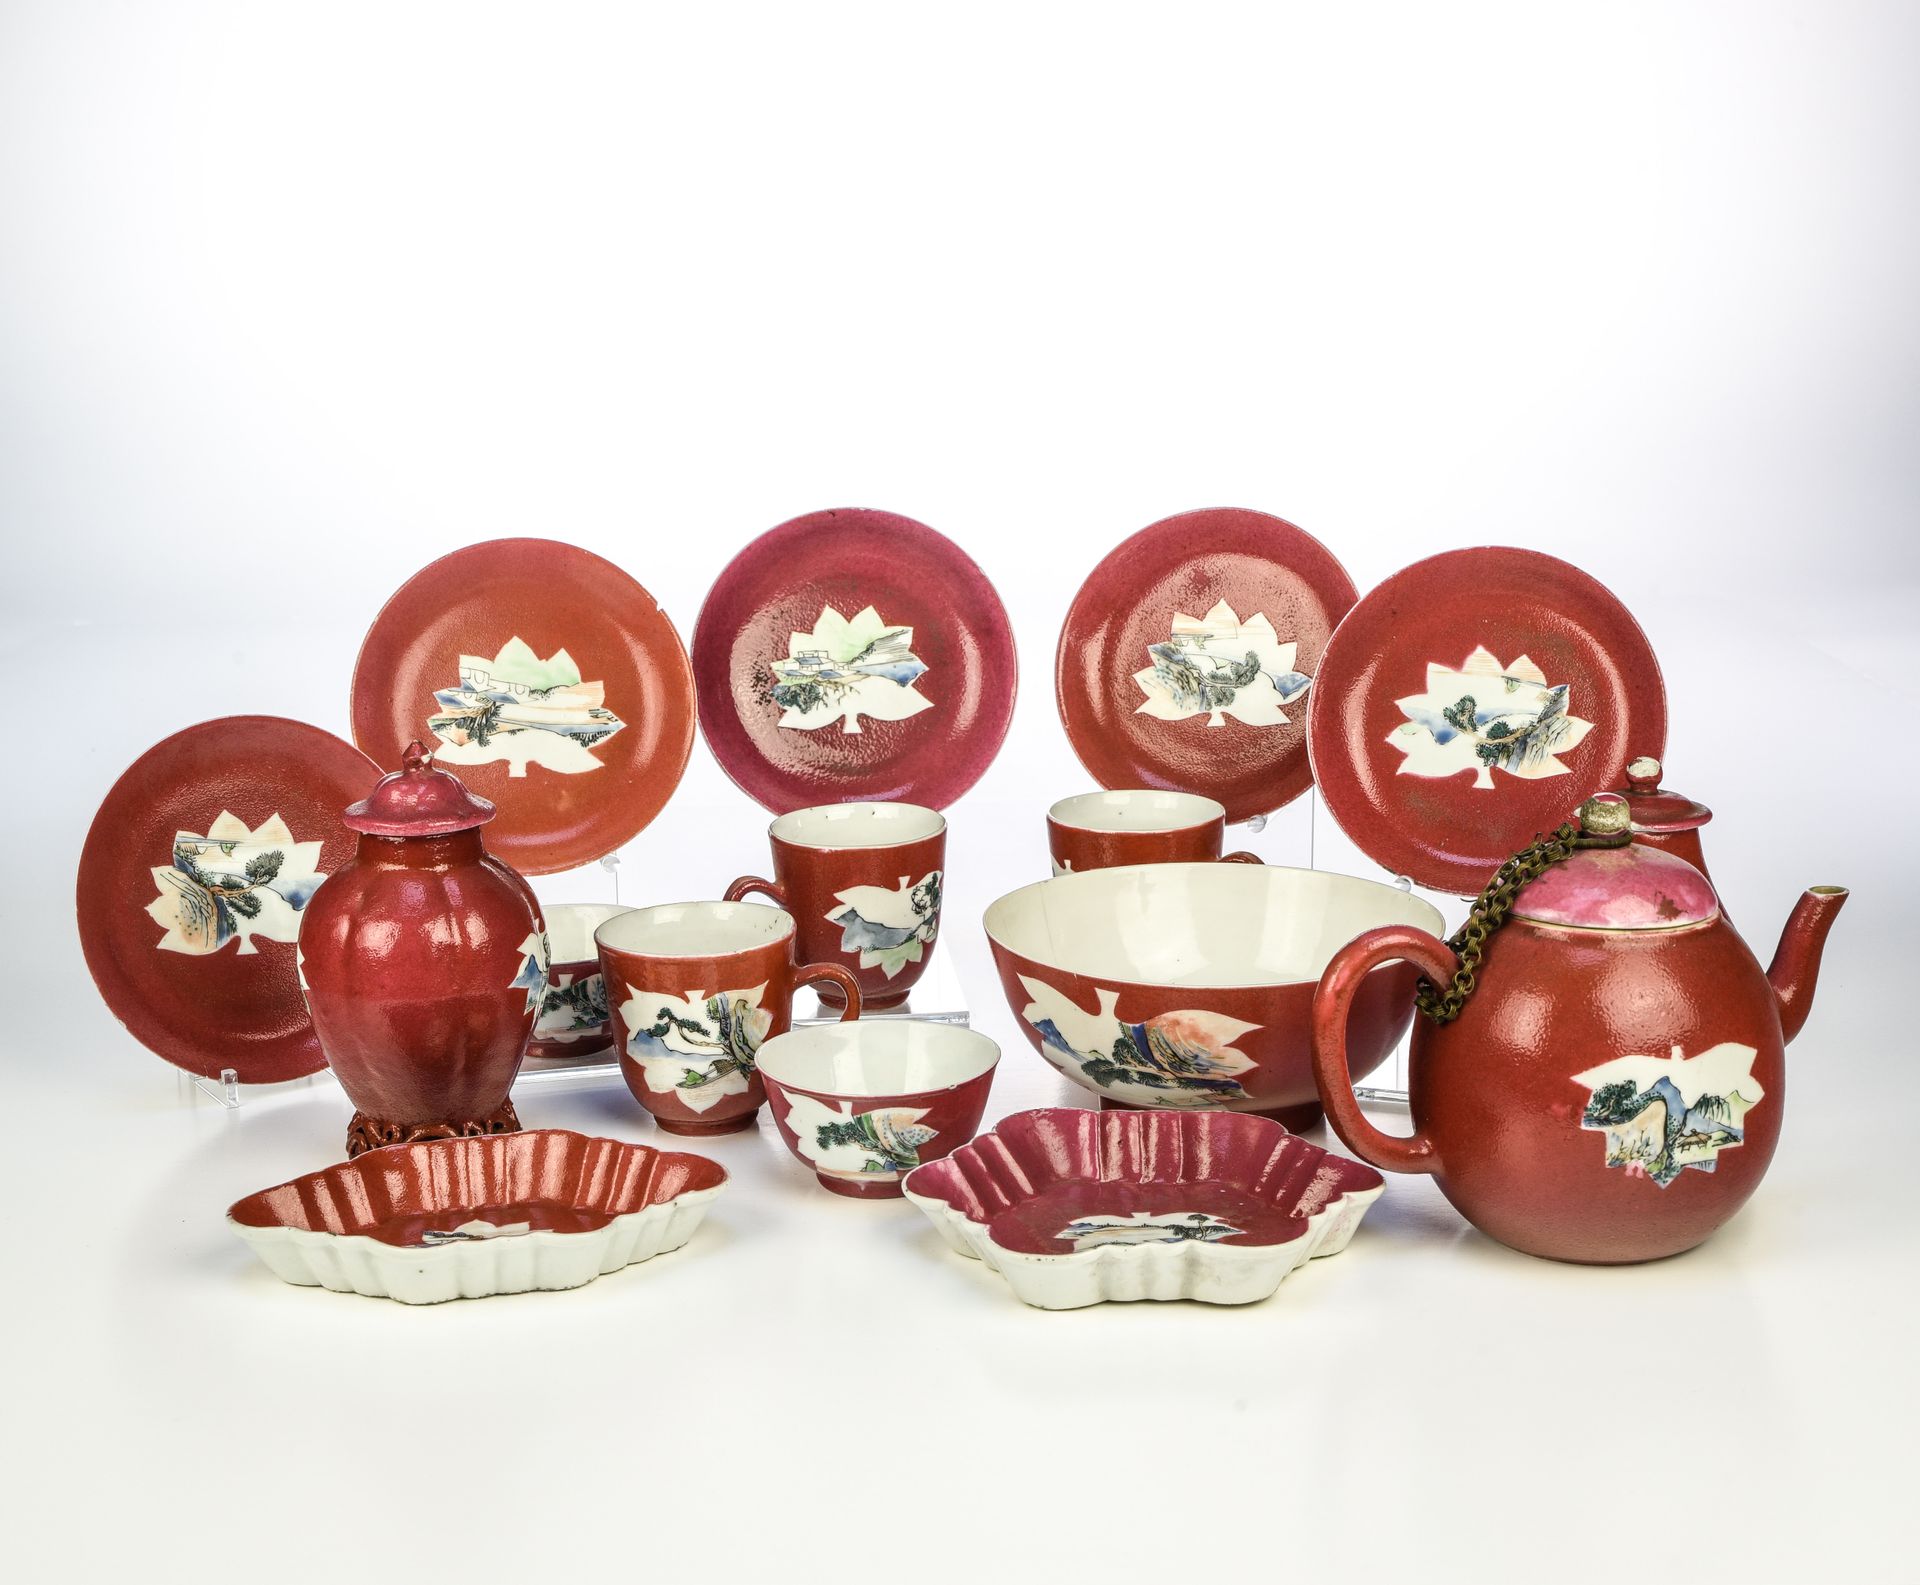 Null CHINA - FINALES DEL SIGLO XVIII

Parte de un servicio de té



En porcelana&hellip;